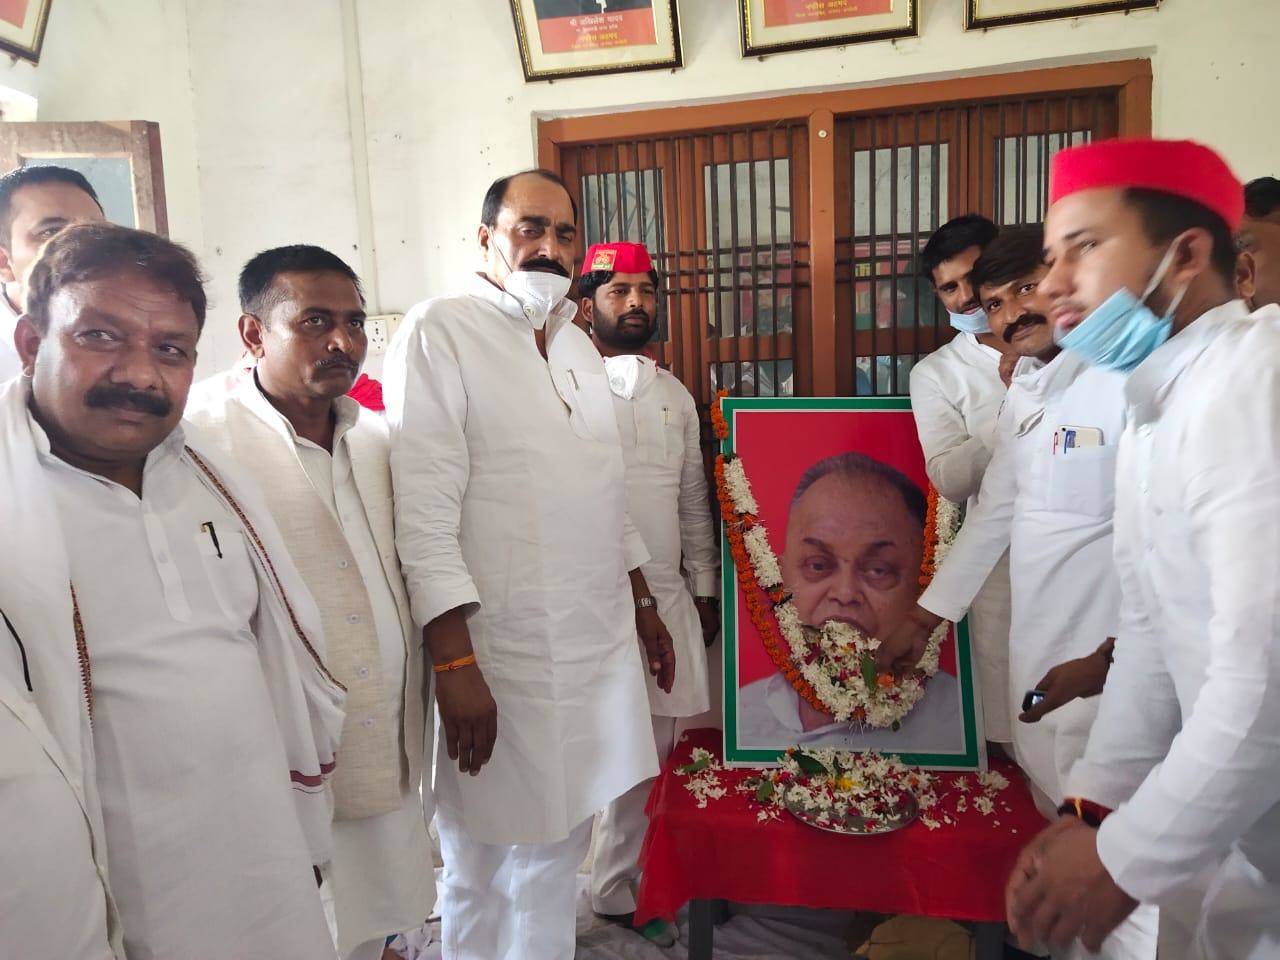 सपा नेताओं ने धूमधाम से मनाया जनेश्वर मिश्र का जन्म दिन, याद किए उनके संघर्ष